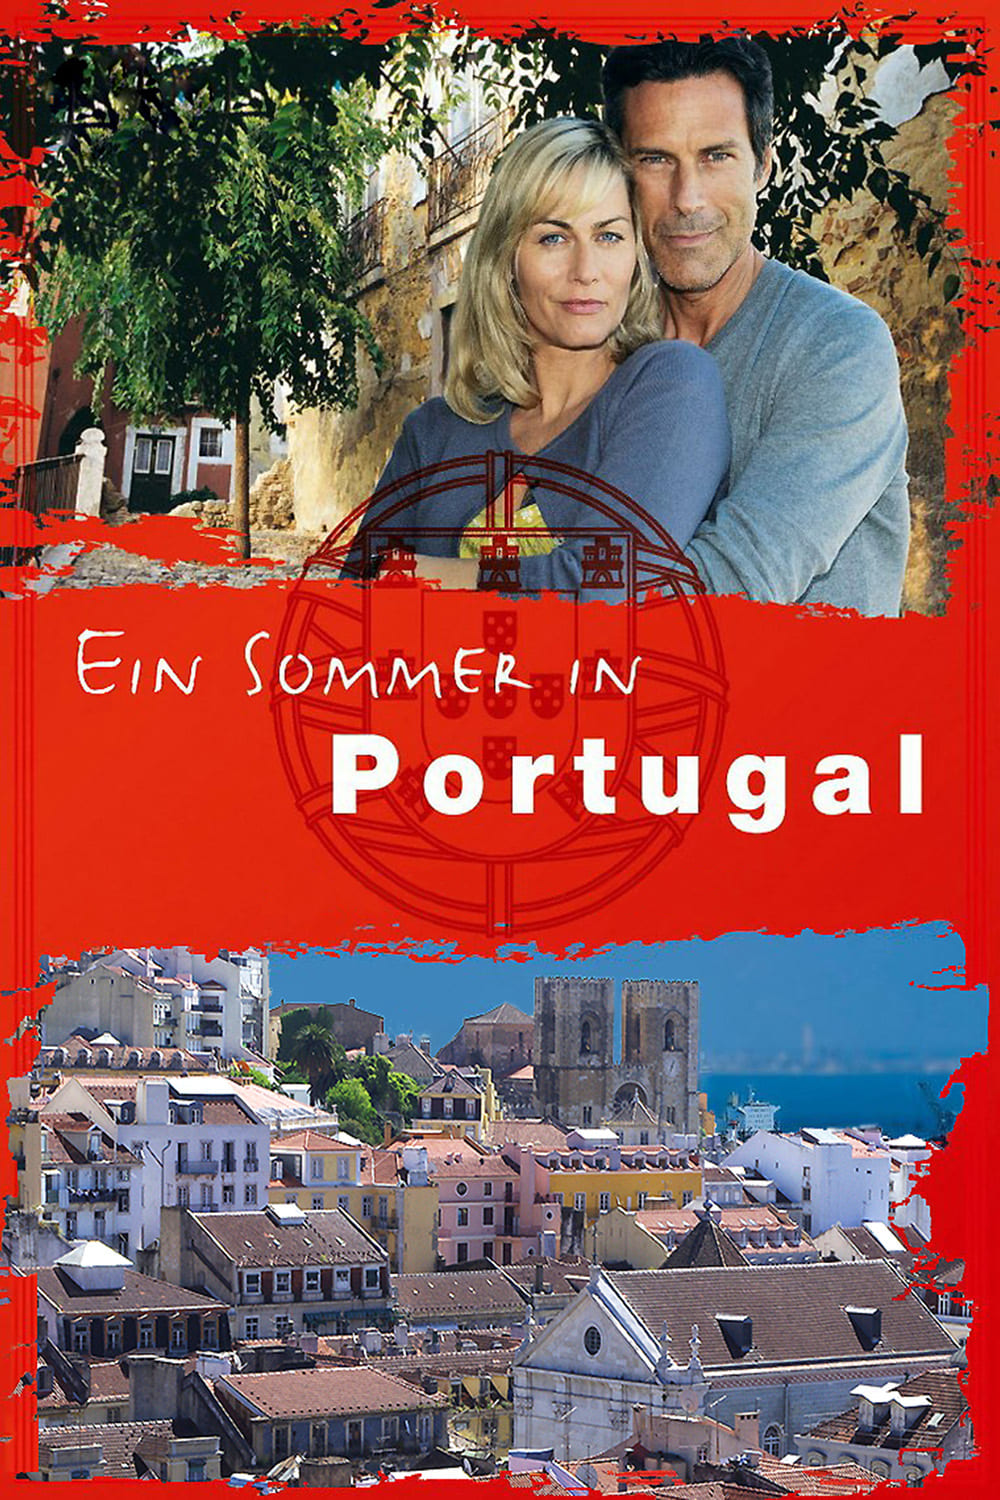 Un verano en Portugal